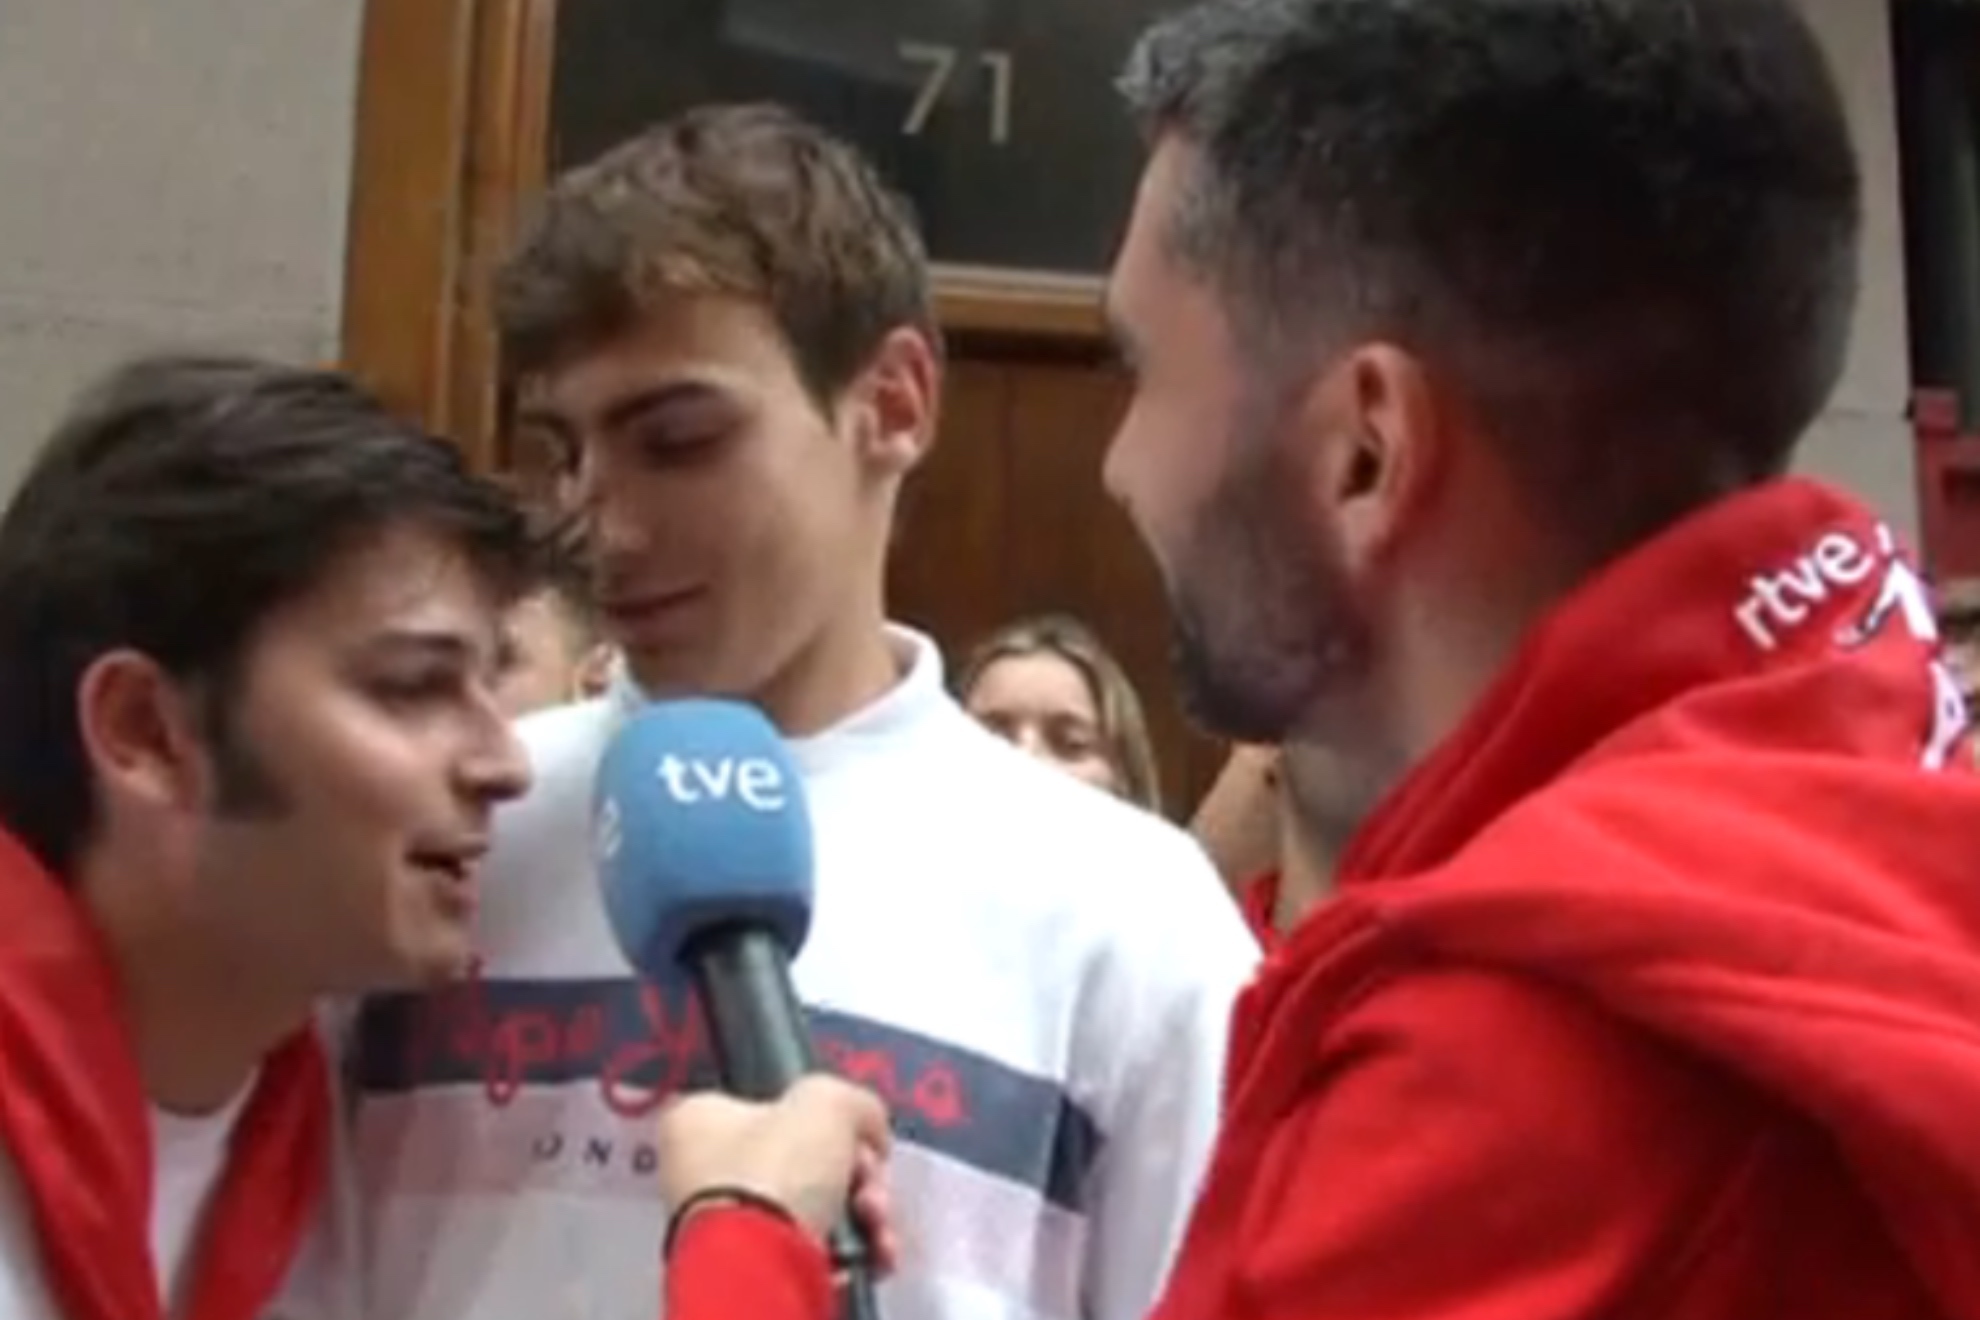 Un joven interrumpe un directo de La 1 durante los Sanfermines al grito de "Que te vote Txapote!"